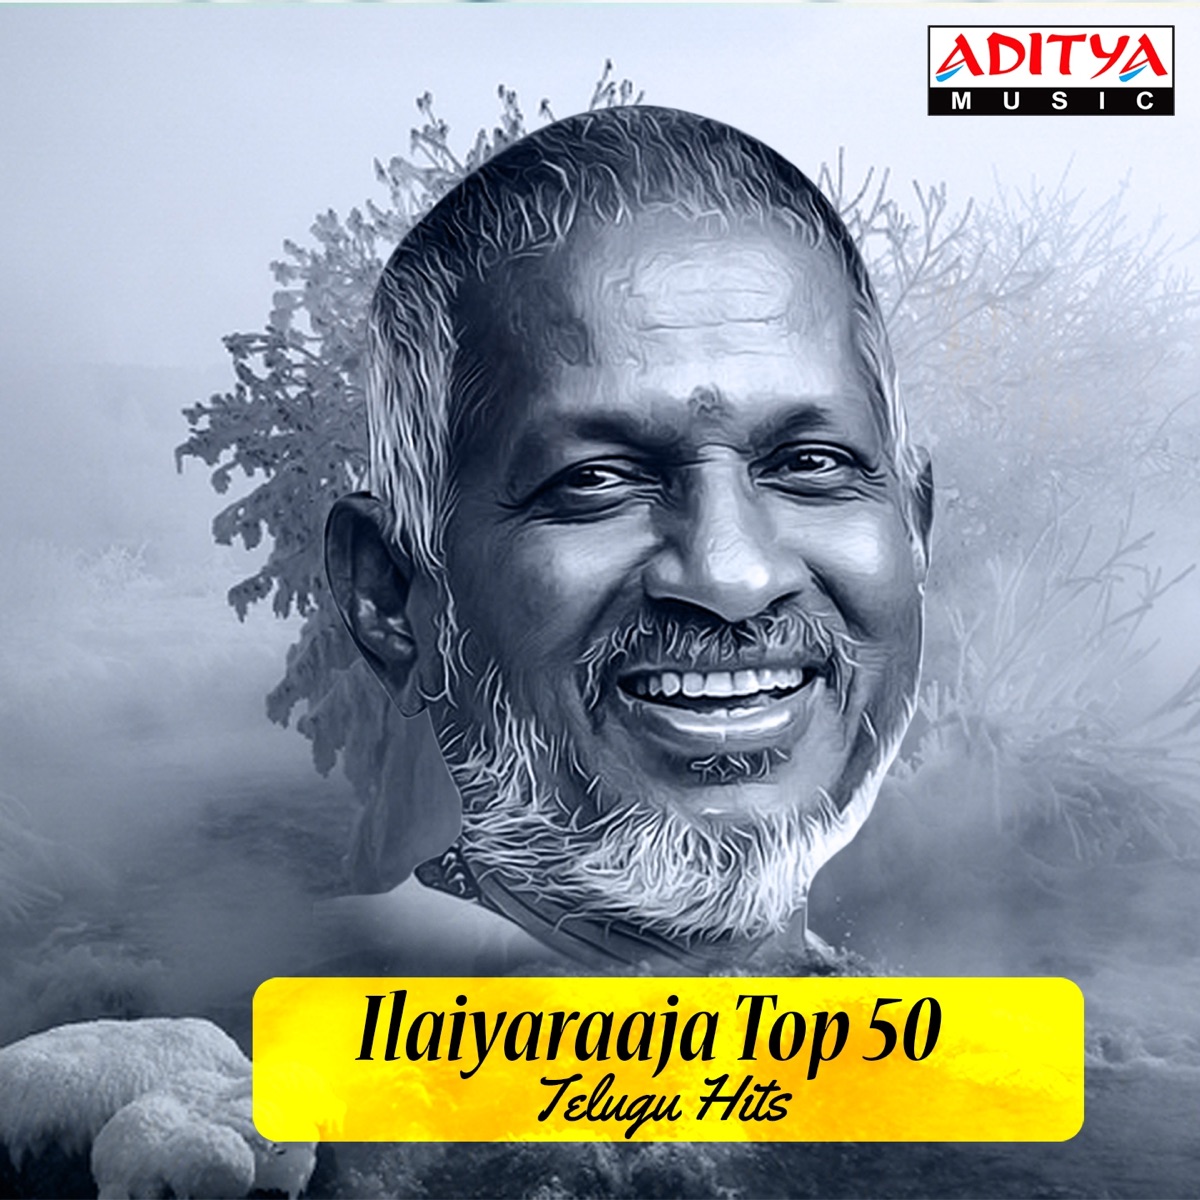 Ilaiyaraaja Top 50 Telugu Hits - Album by Ilaiyaraaja - Apple Music